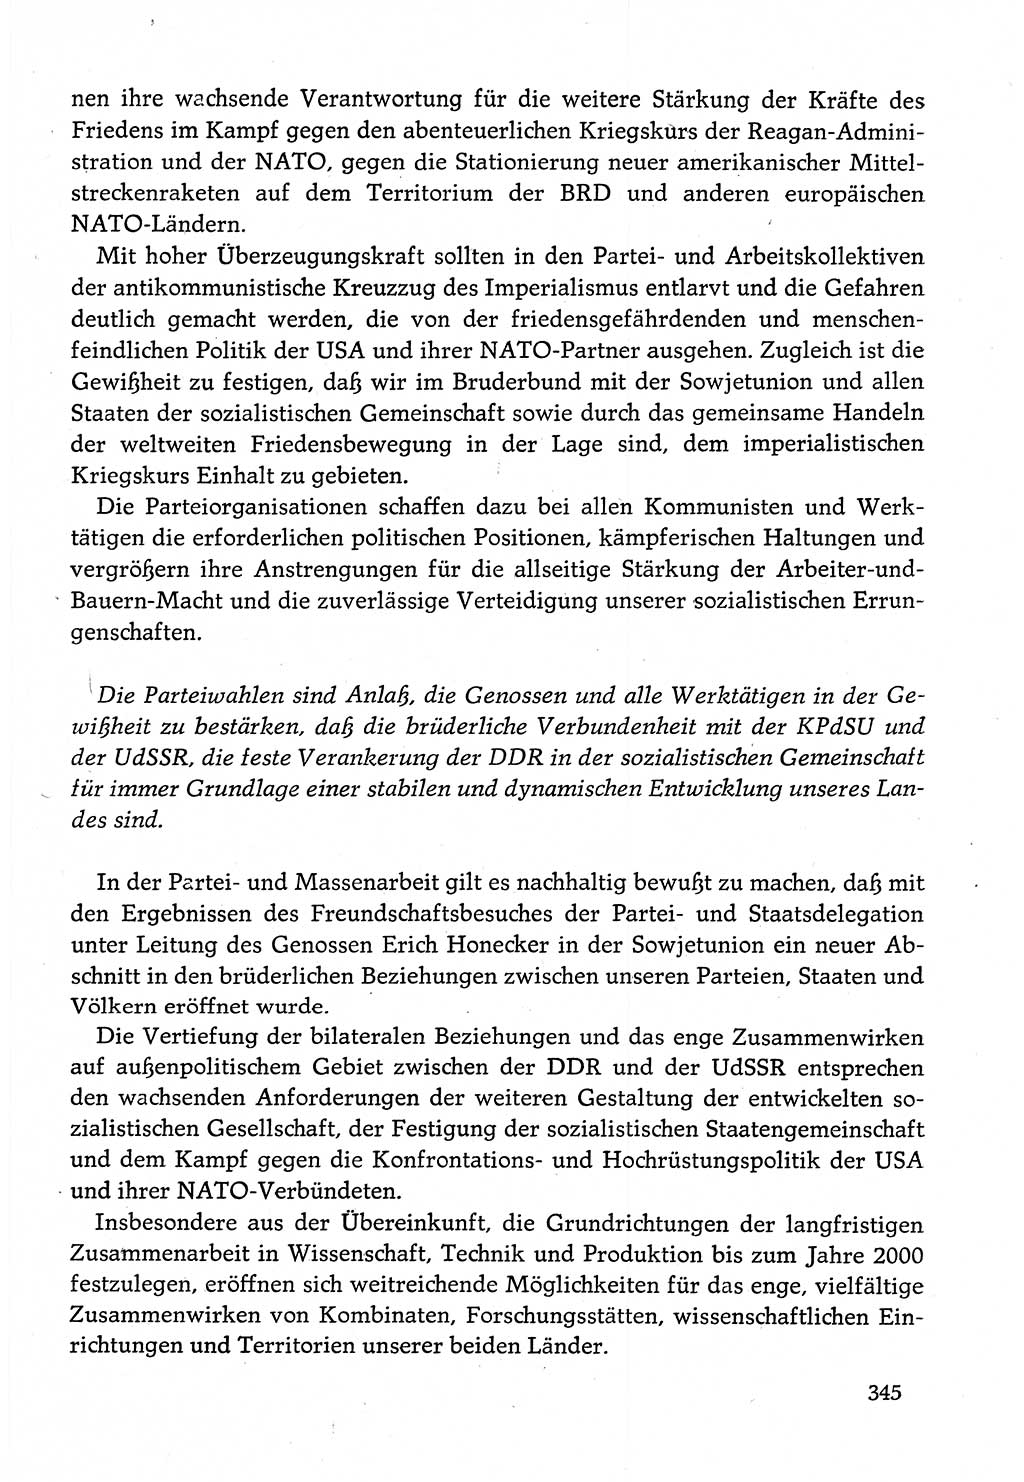 Dokumente der Sozialistischen Einheitspartei Deutschlands (SED) [Deutsche Demokratische Republik (DDR)] 1982-1983, Seite 345 (Dok. SED DDR 1982-1983, S. 345)